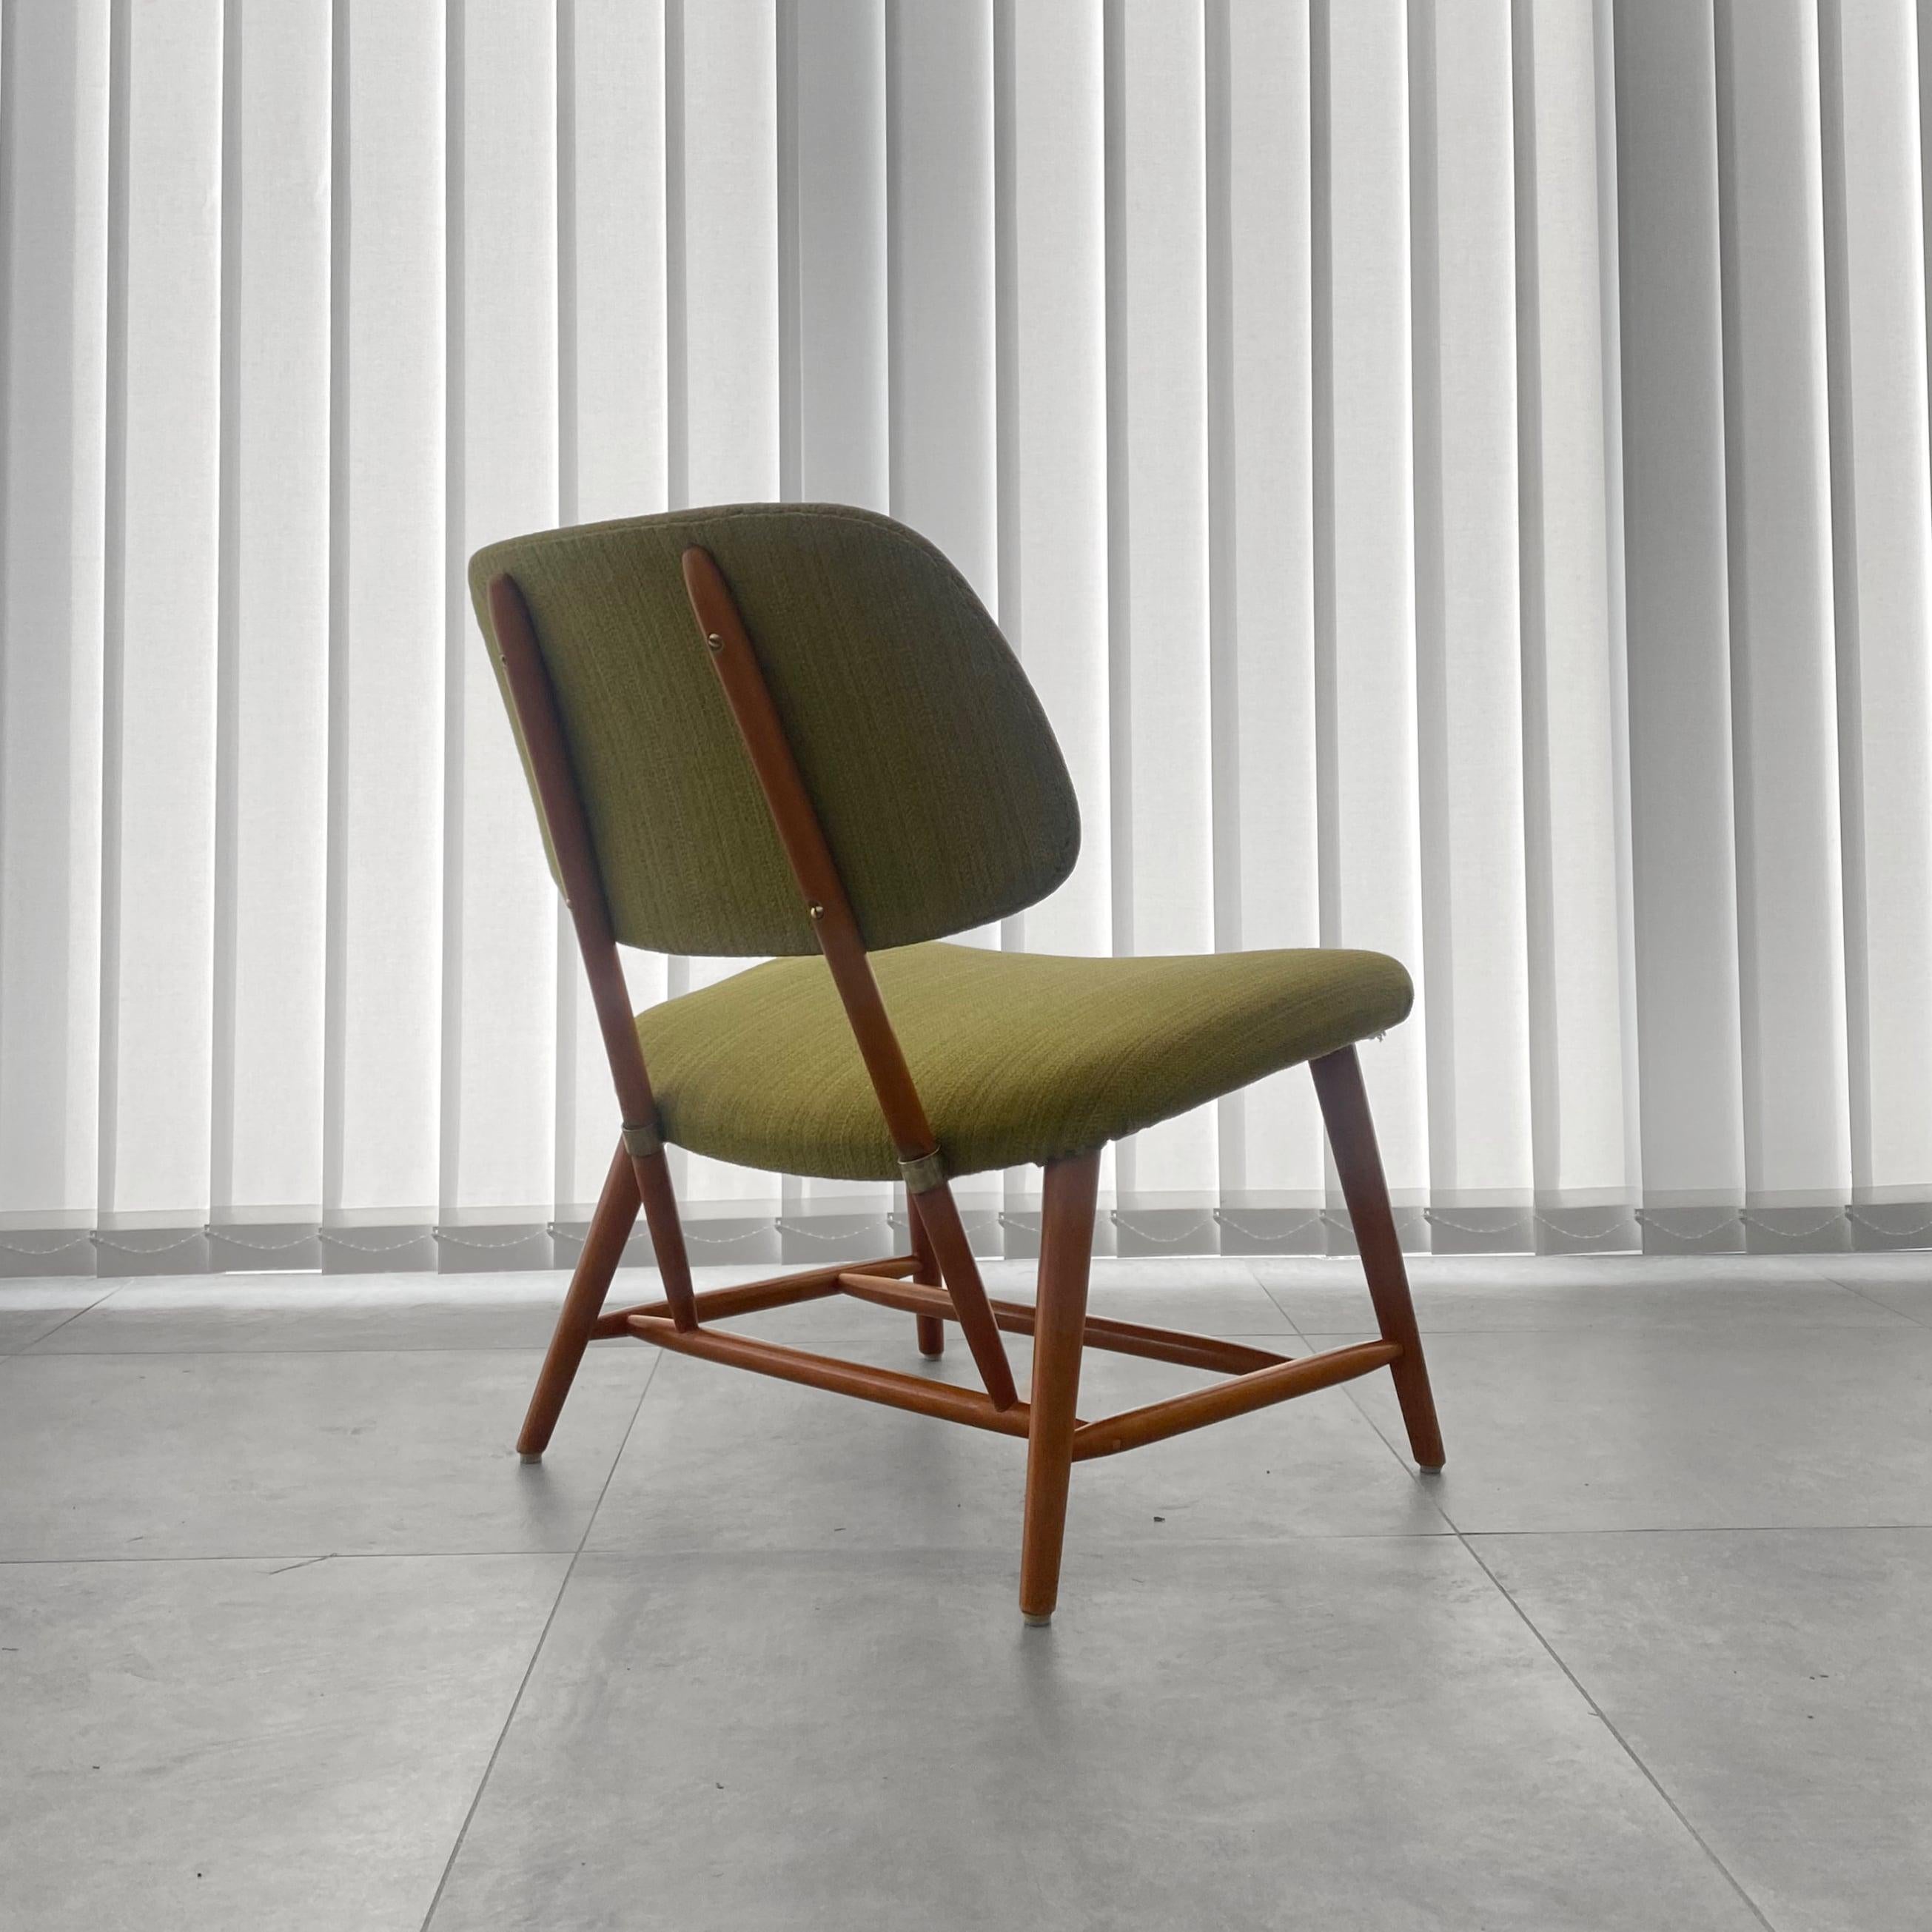 Ein TeVe-Loungesessel, der 1953 von dem schwedischen Architekten Alf Svensson für den Hersteller Ljungs Industrier (Dux) entworfen wurde. Er ist aus massiver Buche gefertigt, mit Messingdetails versehen und mit einer originalen Textilbespannung in